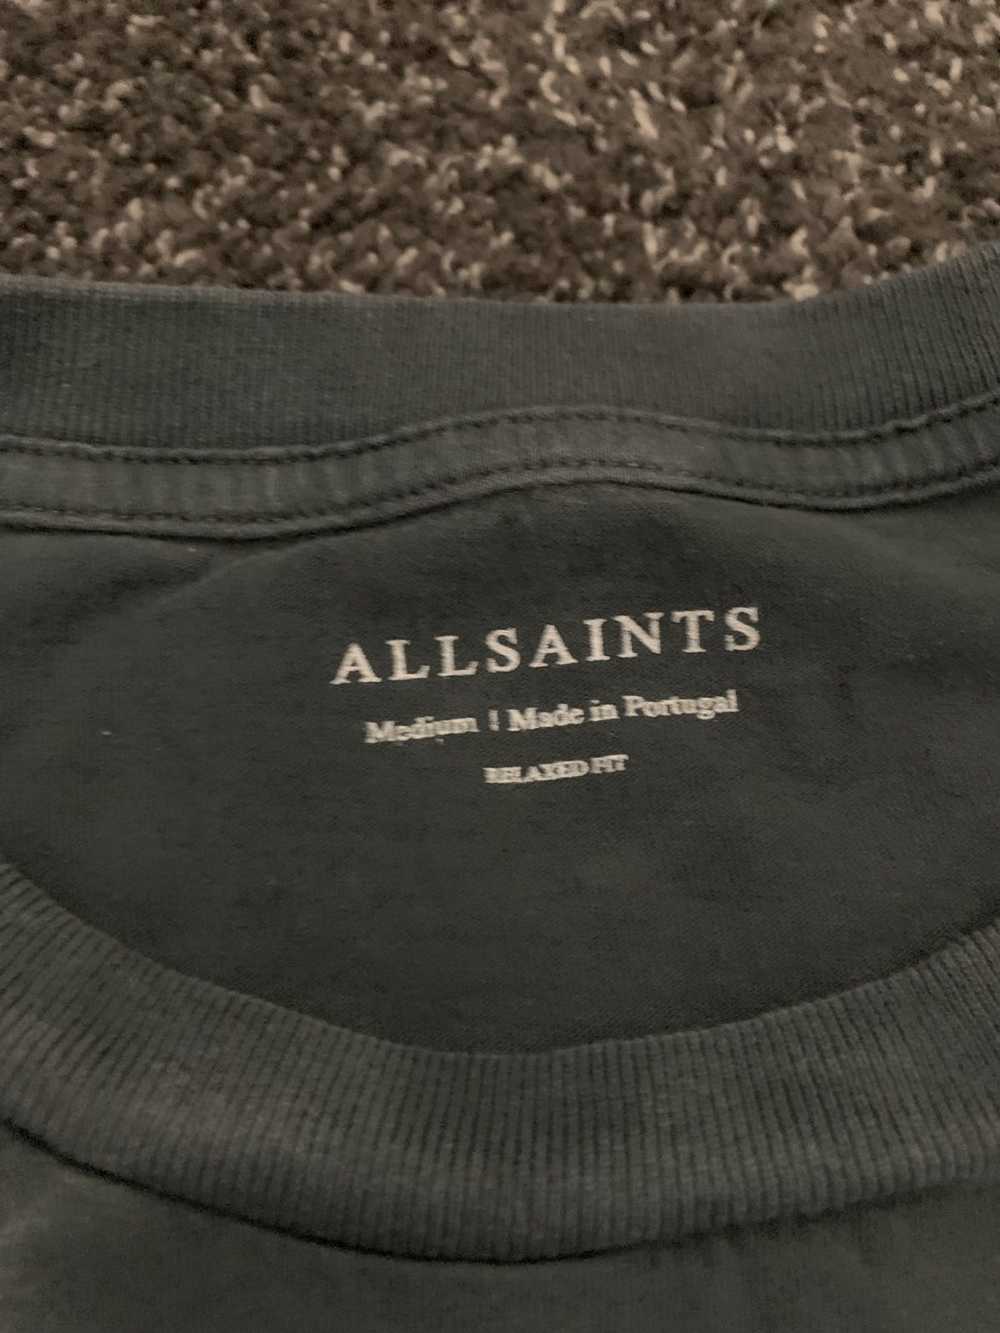 Allsaints Allsaints Grey T-Shirt - image 2